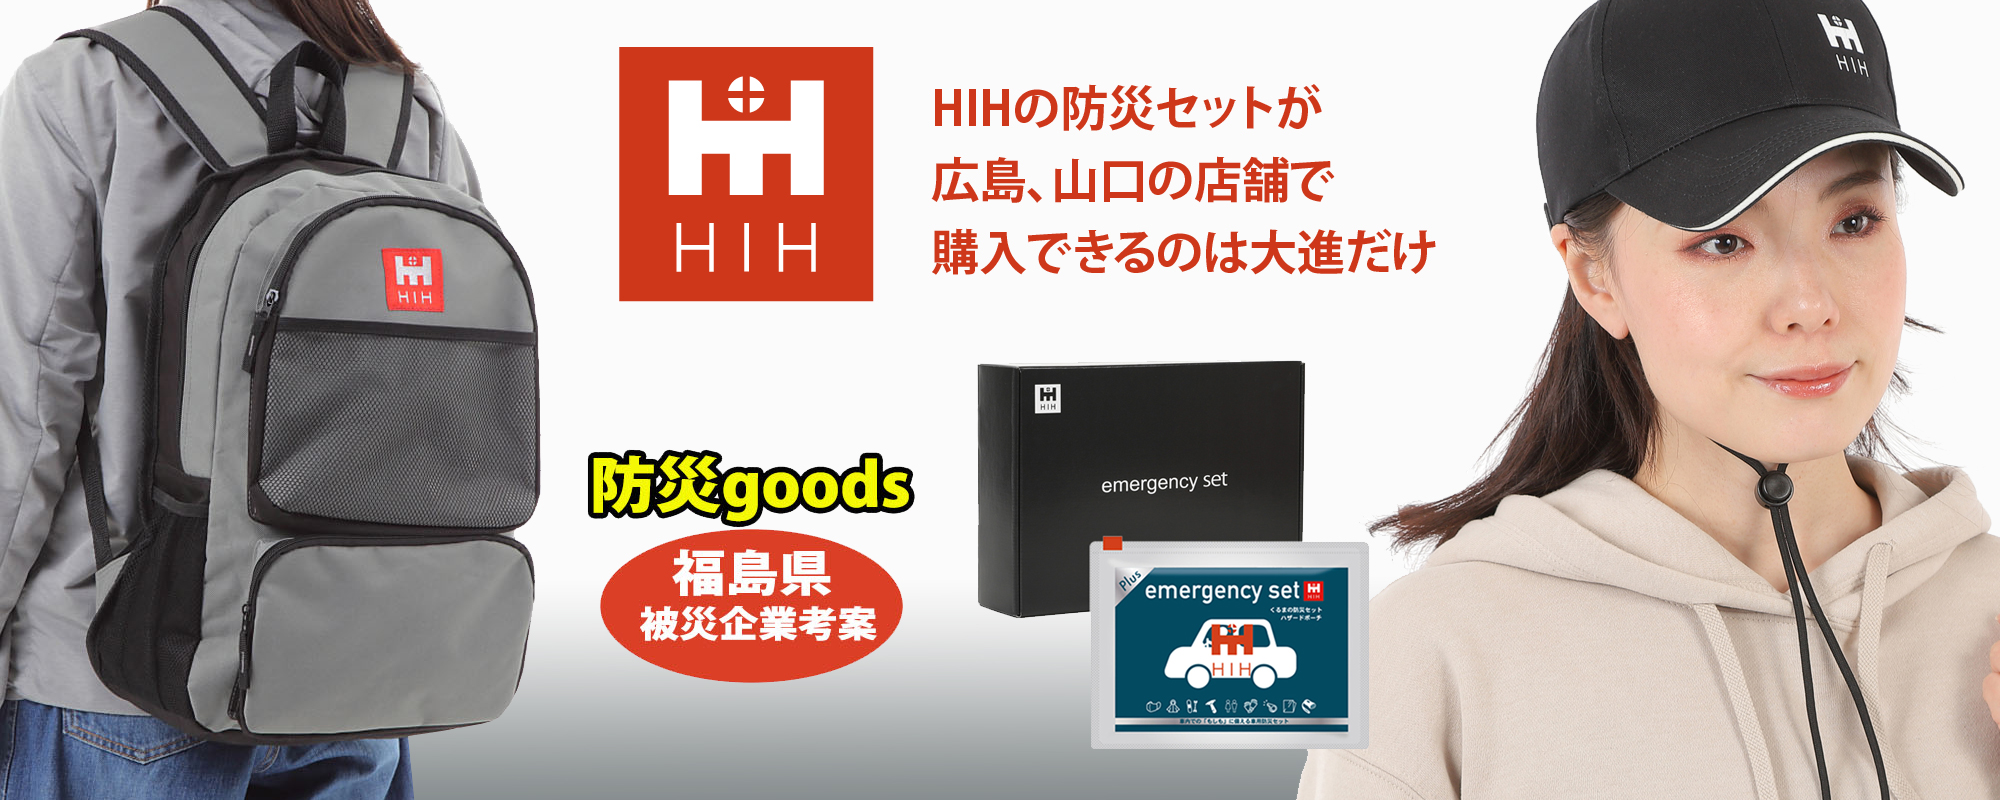 HIH防災セット 広島・山口で購入できるのは大進だけ